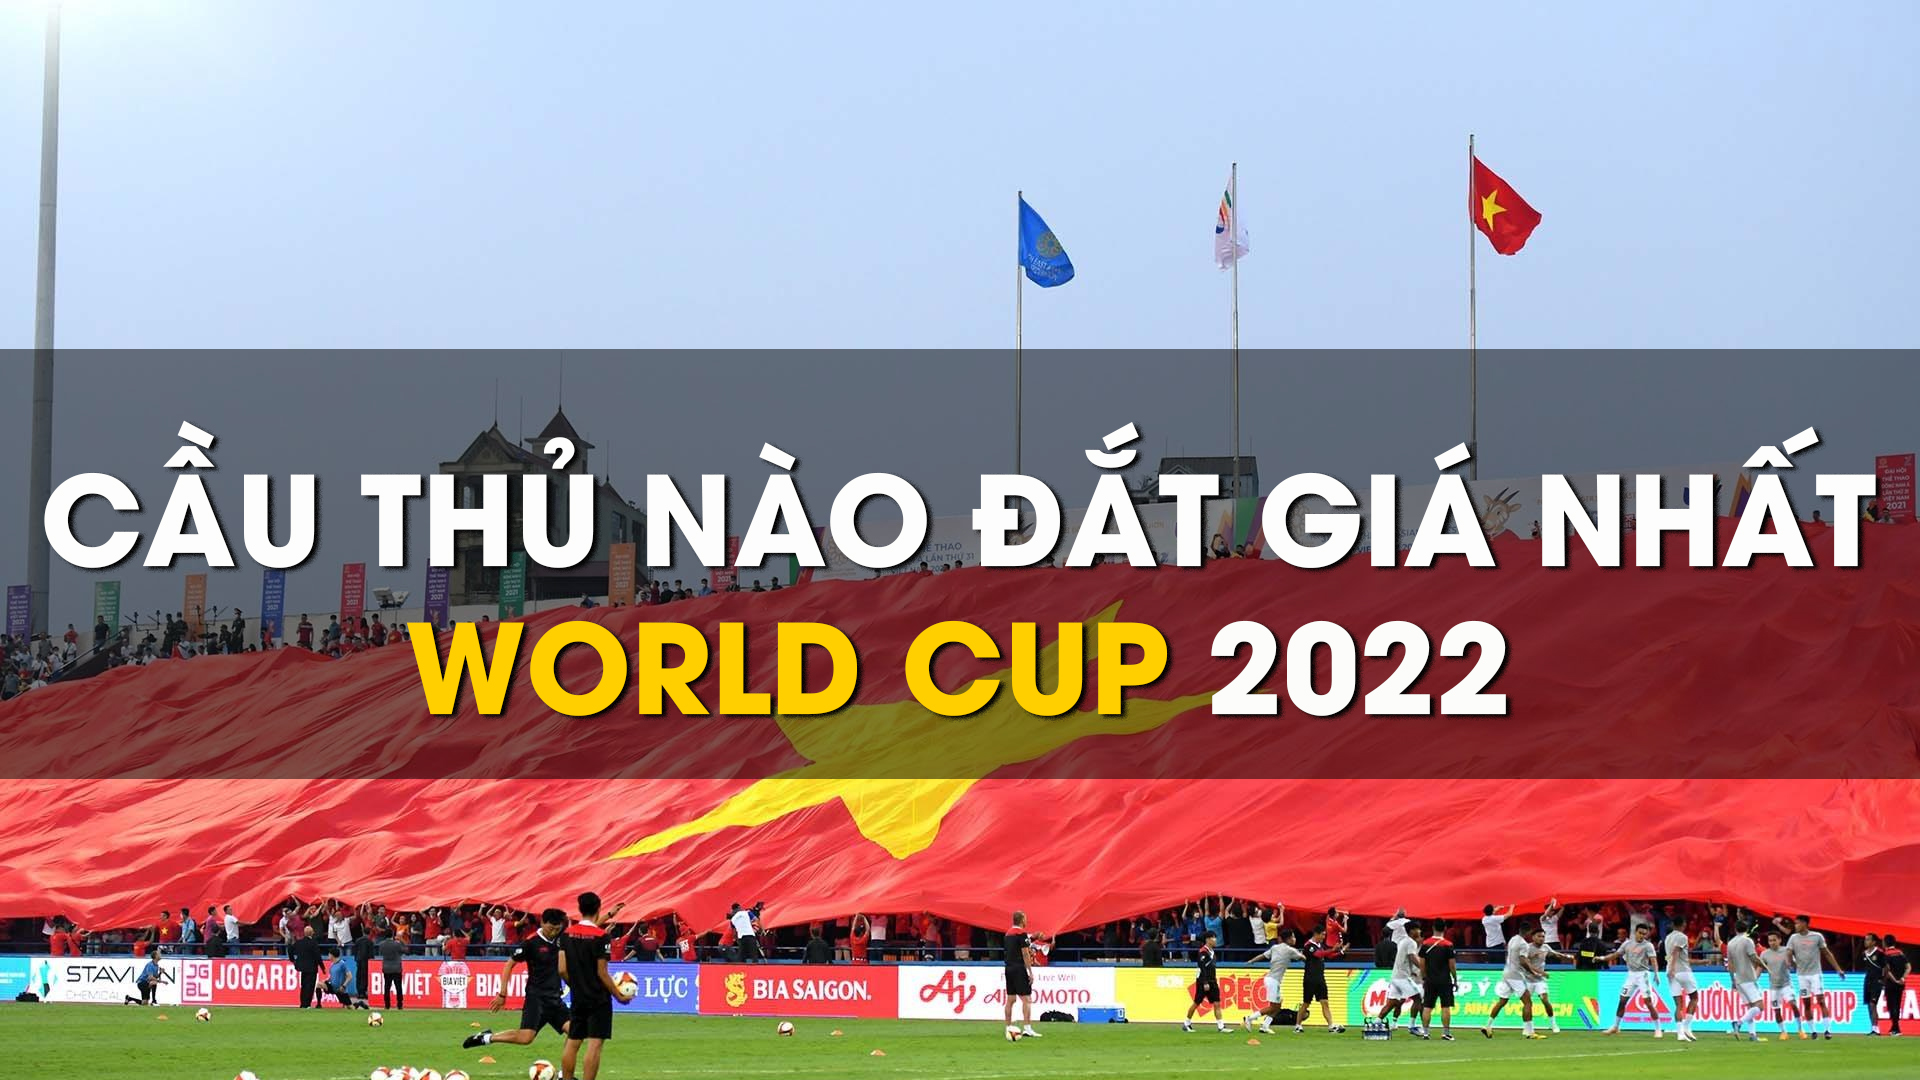 CẦU THỦ NÀO ĐẮT GIÁ NHẤT WORLD CUP 2022